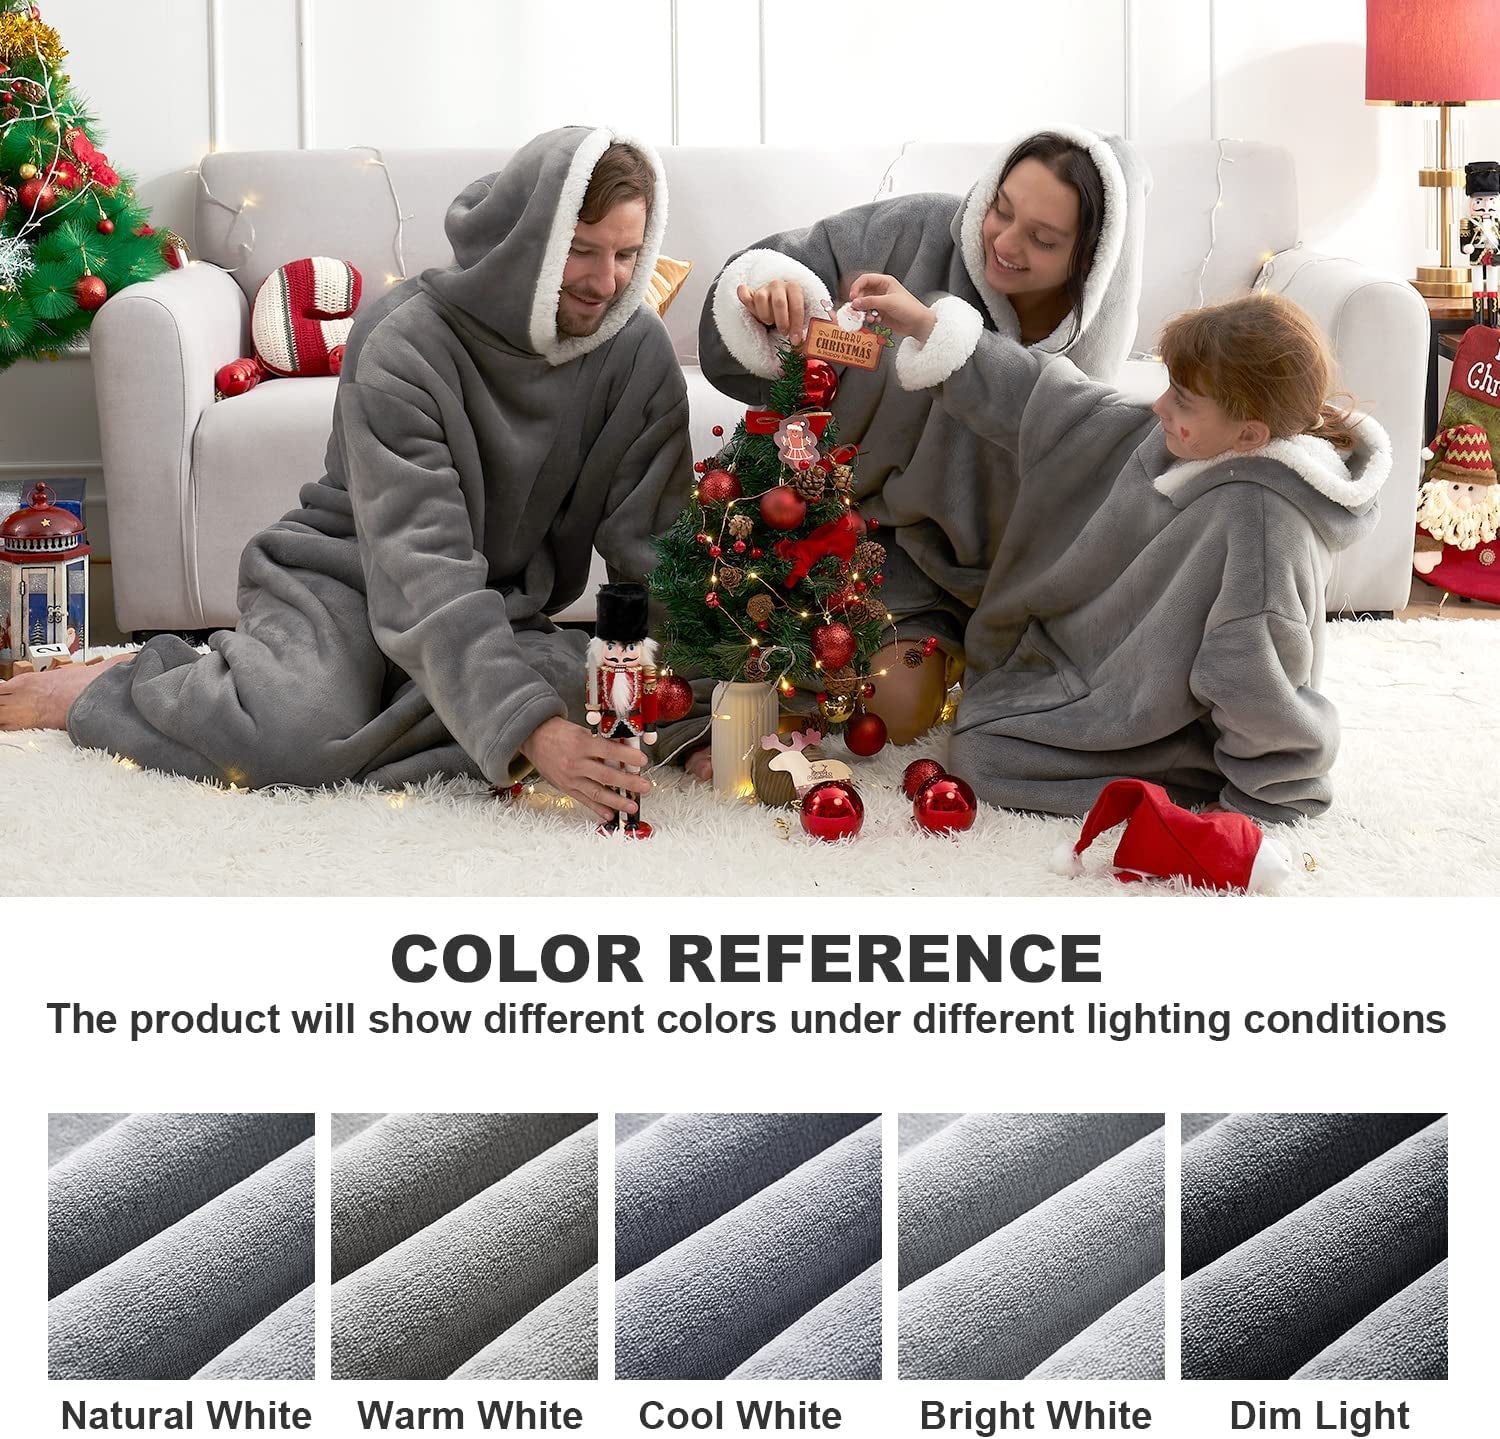 Wearable Blanket Hoodie for Kids, Hoodie Blanket with Pockets and Sleeves Sweatshirt for Teens as a Gift - Grey Kids